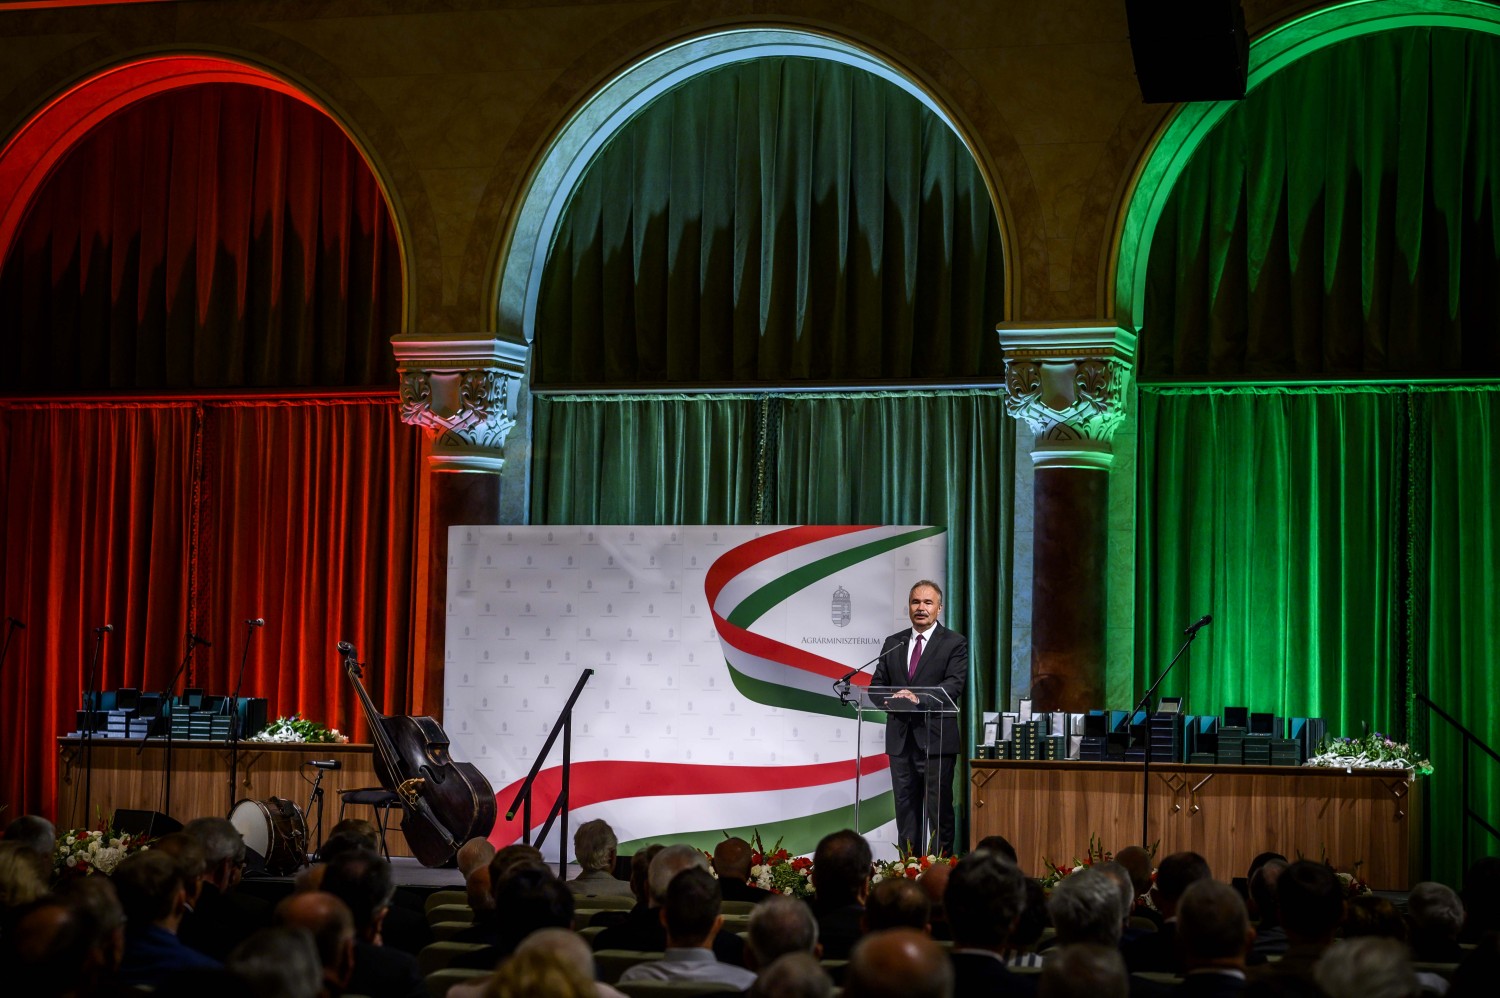 Agrárminiszter: Dolgozzunk együtt továbbra is Magyarország gyarapodásán